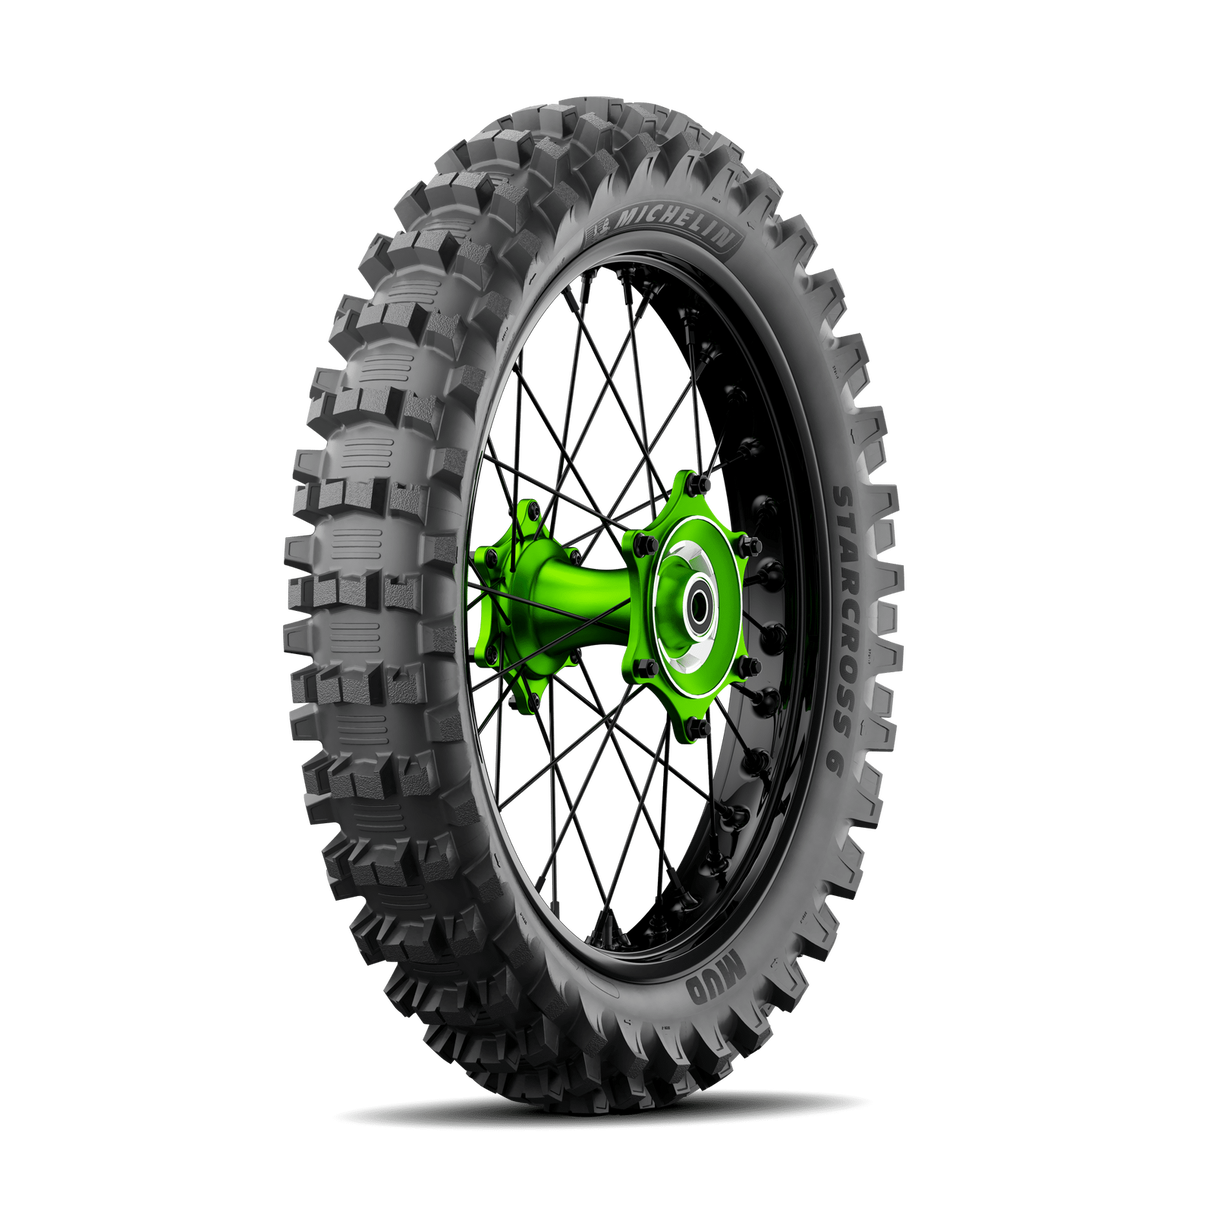 Michelin Starcross Mud 6 100/90-19 Rear Tyre